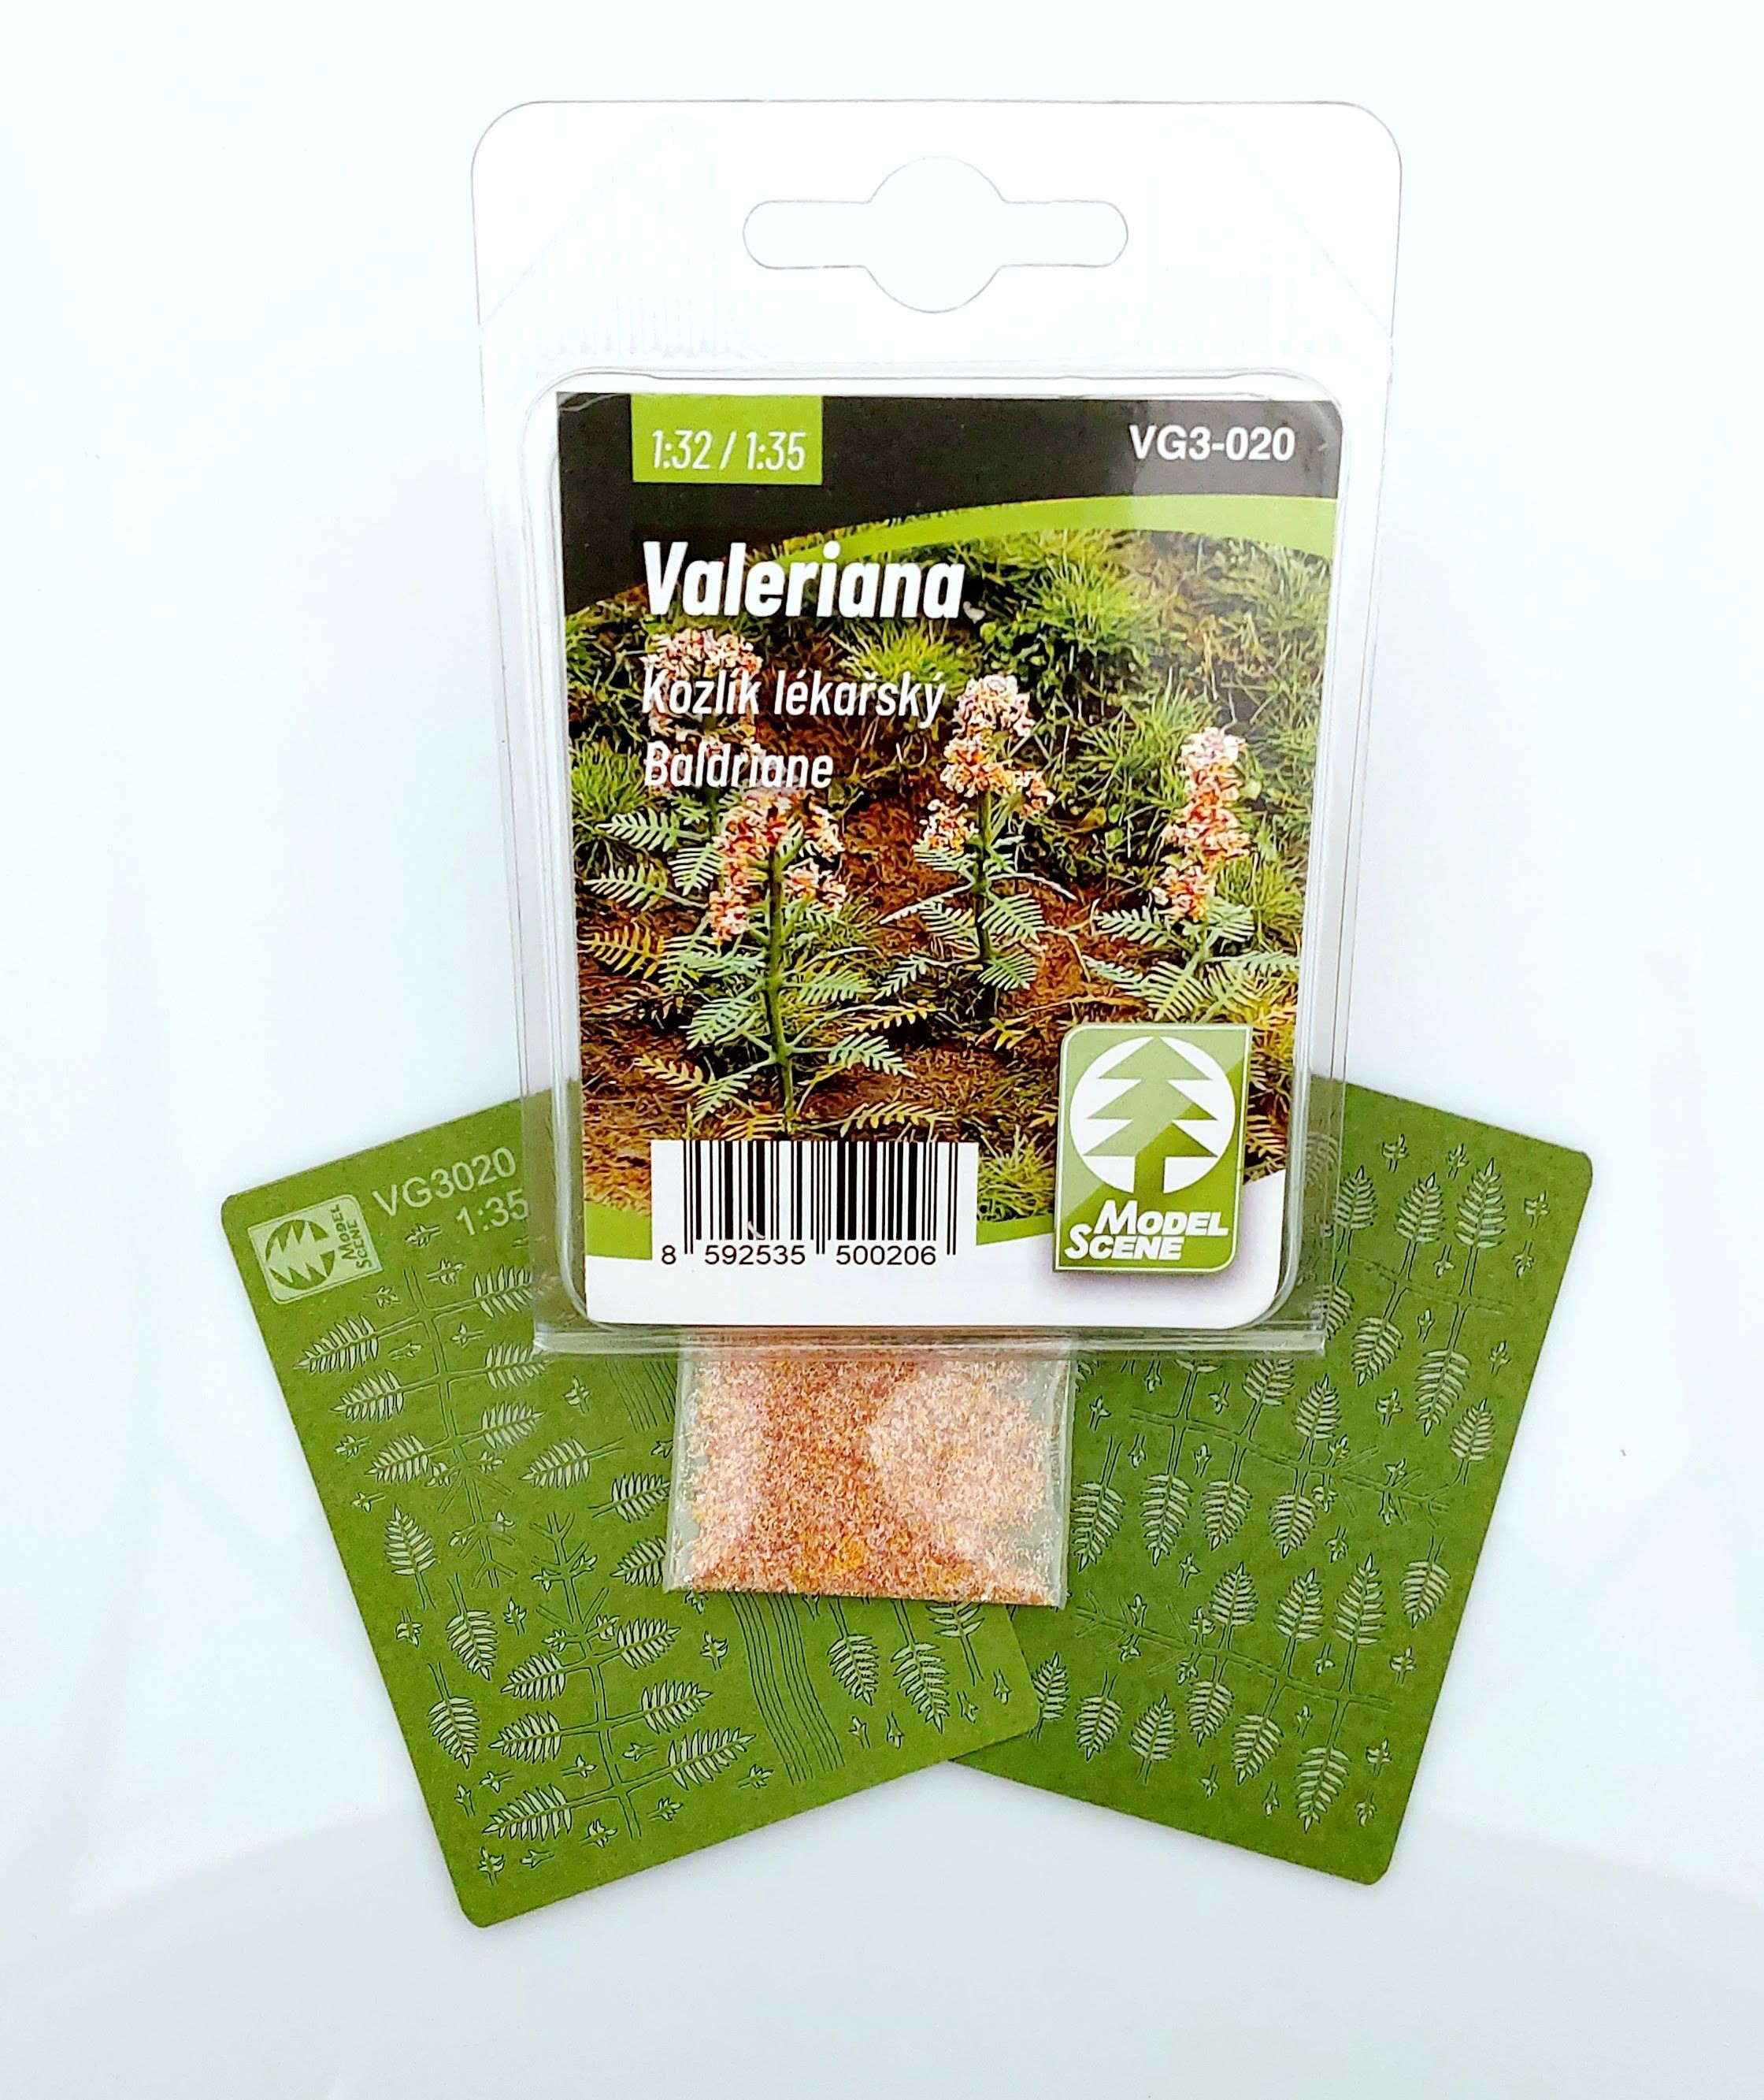 Valeriana: Product code VG3-020